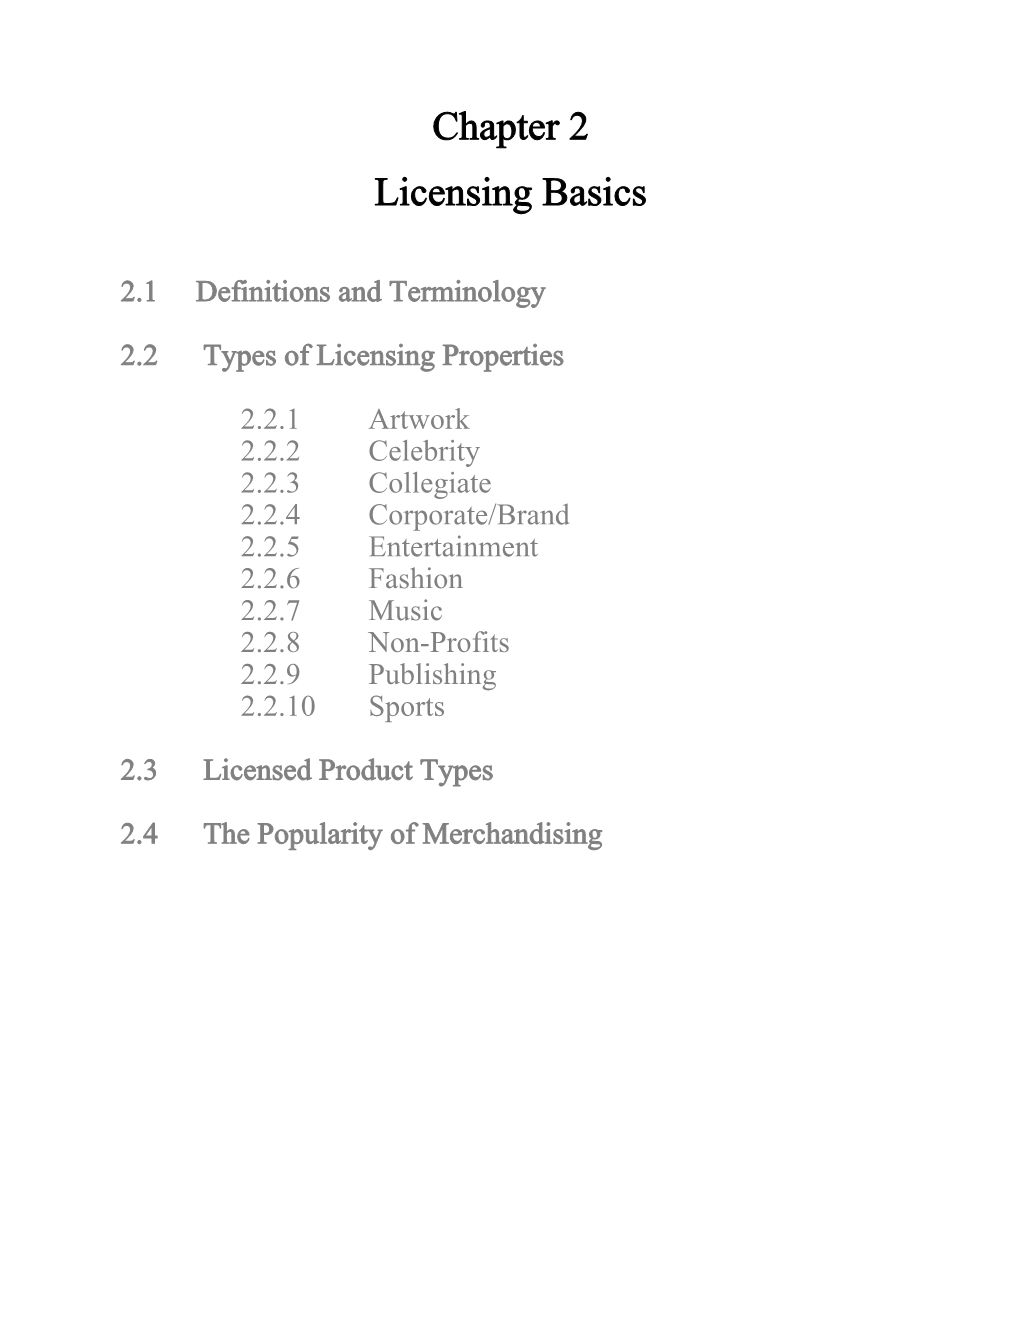 Chapter 2 Licensing Basics